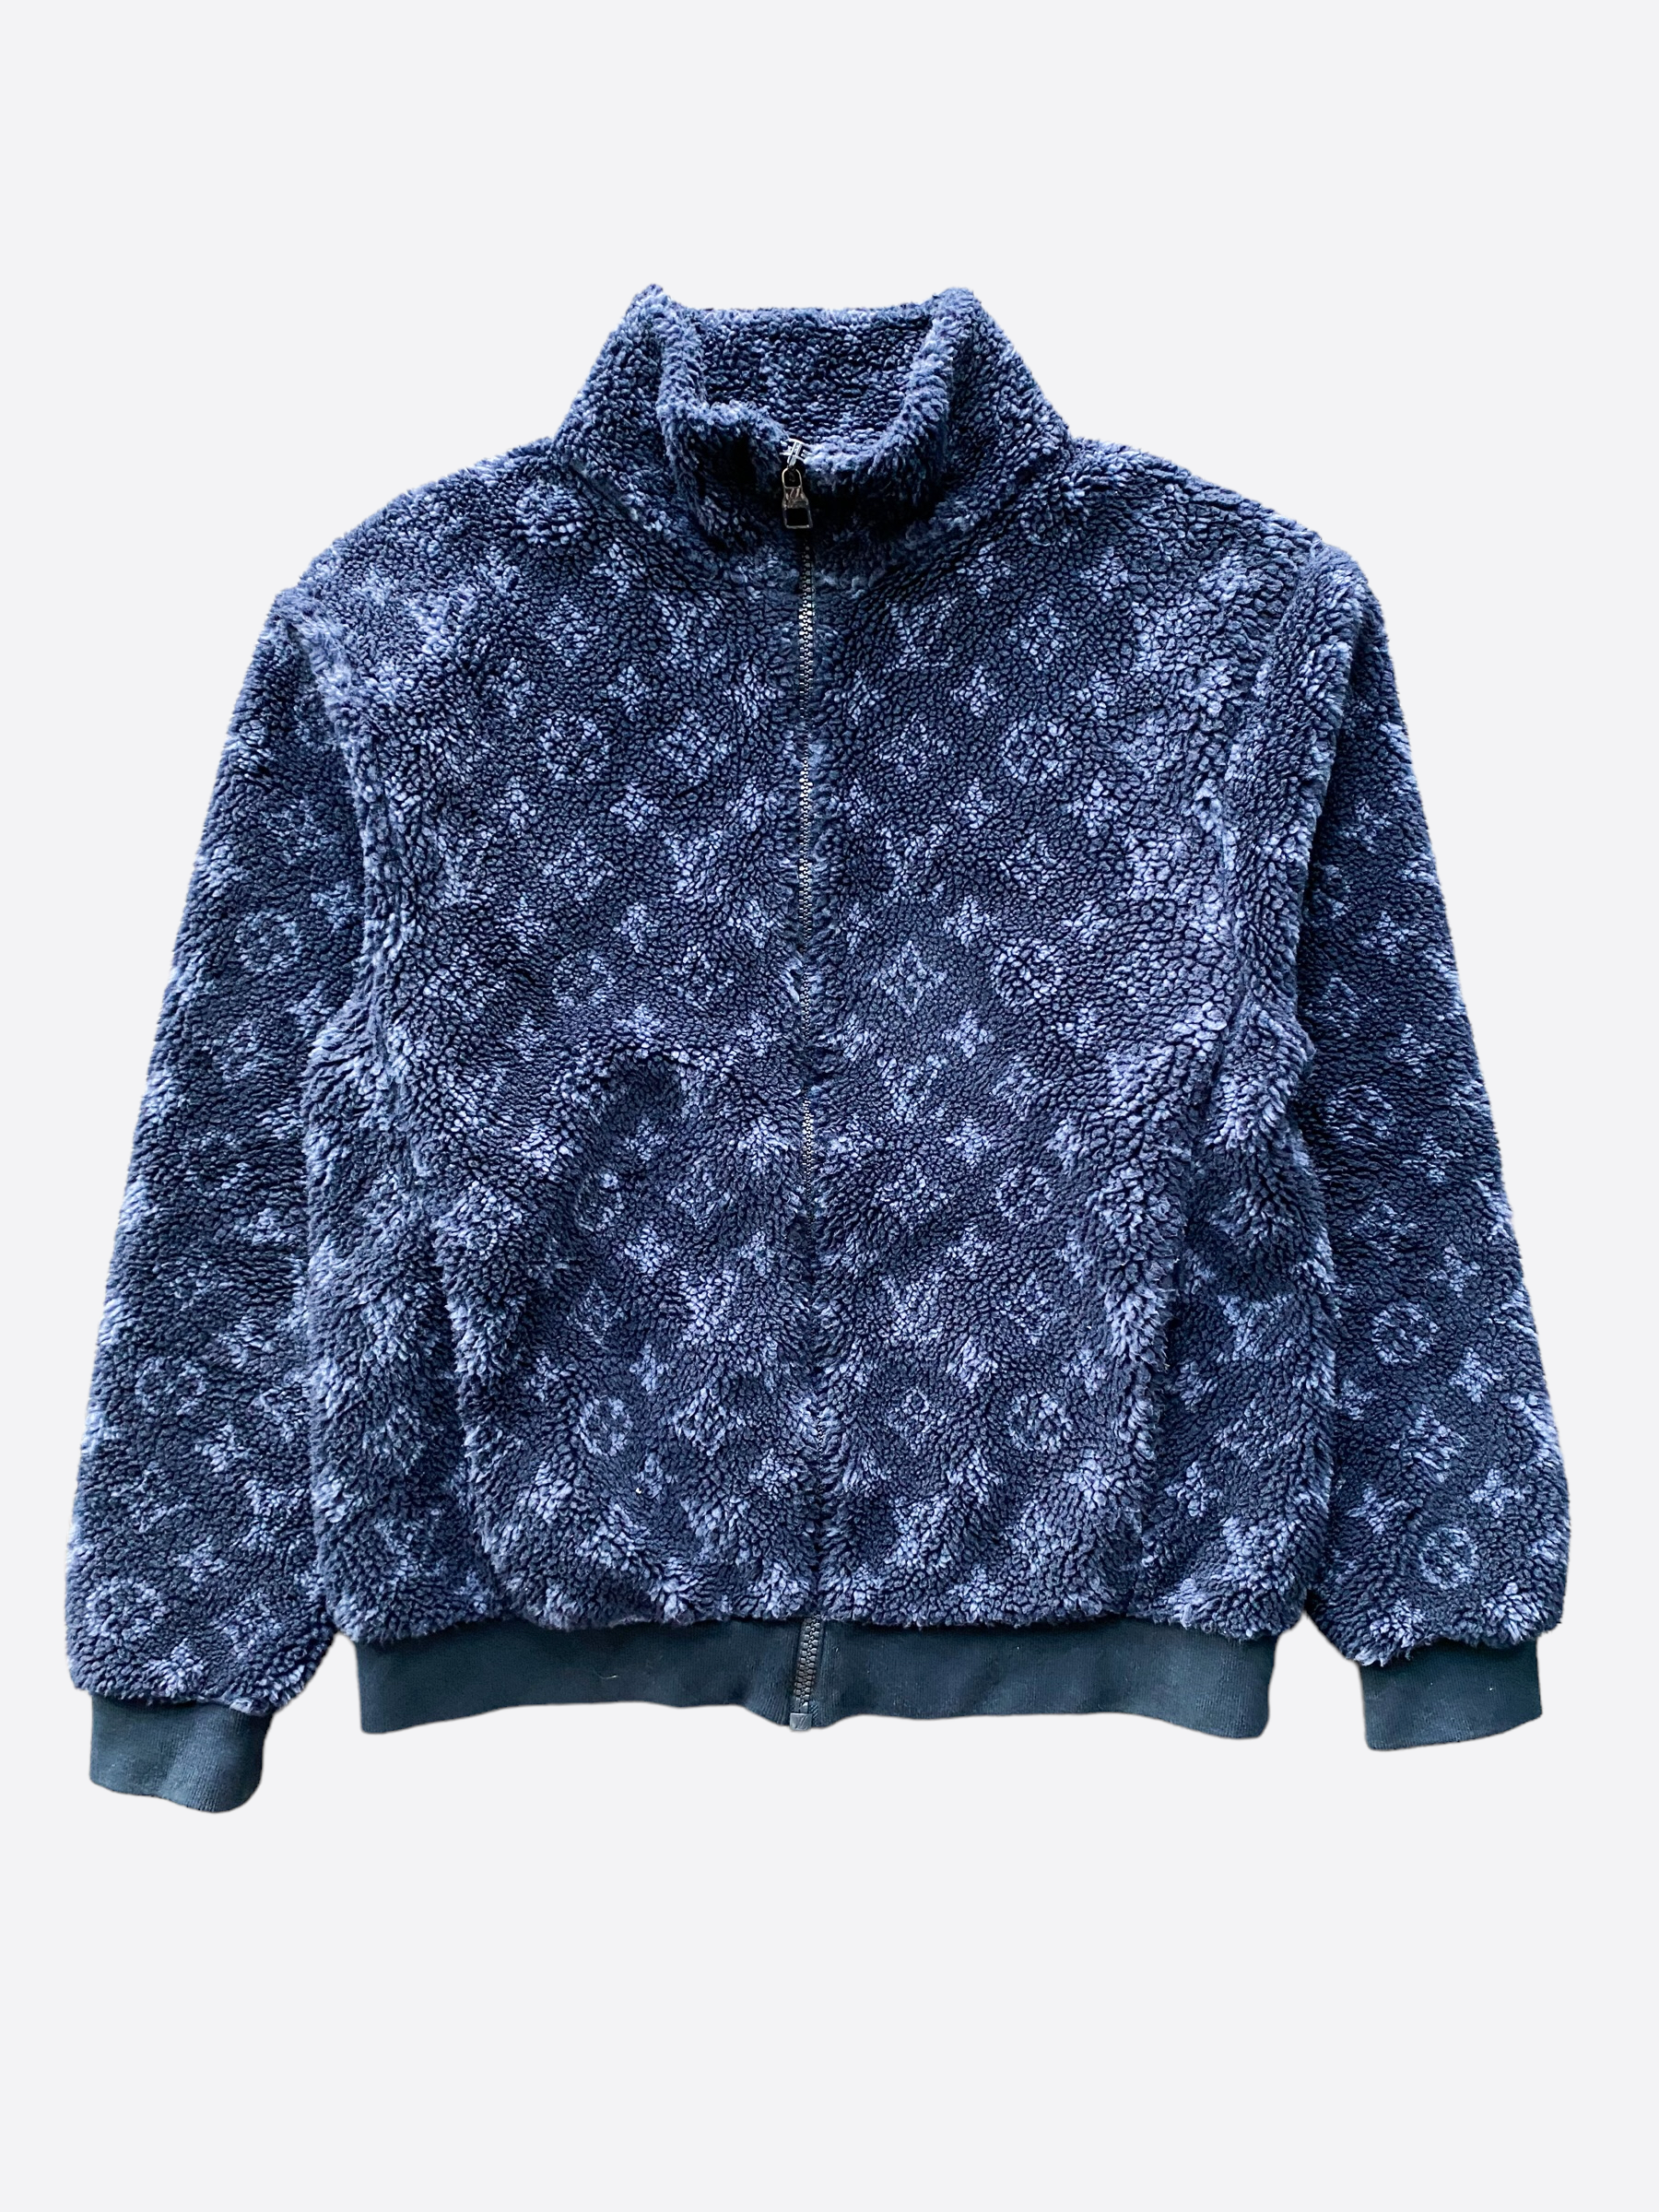 Louis Vuitton, Jackets & Coats, Rare Louis Vuitton Supreme Trench Coat  Size 5